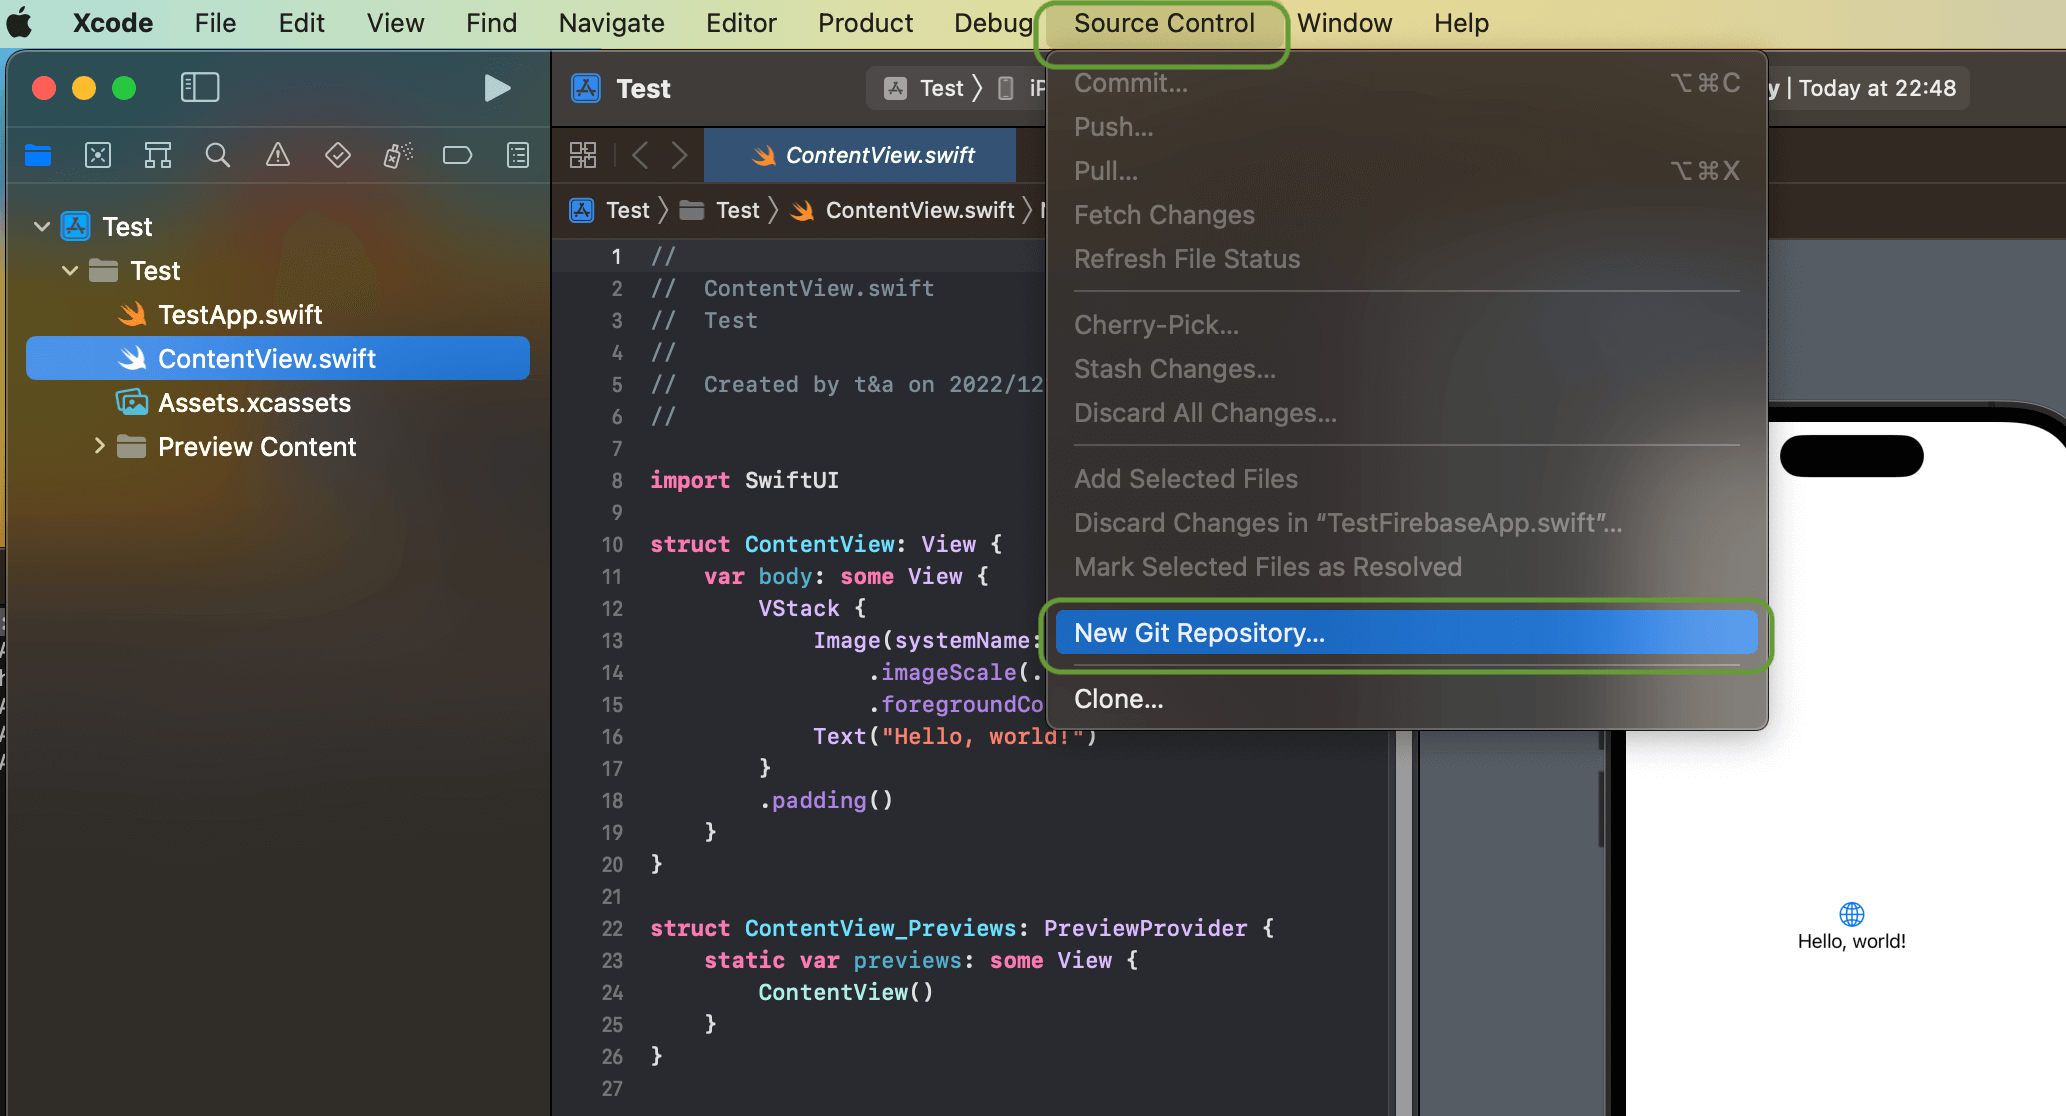 【Swift】GitHubへiOSアプリプロジェクトをアップロードする方法!Xcodeとの連携